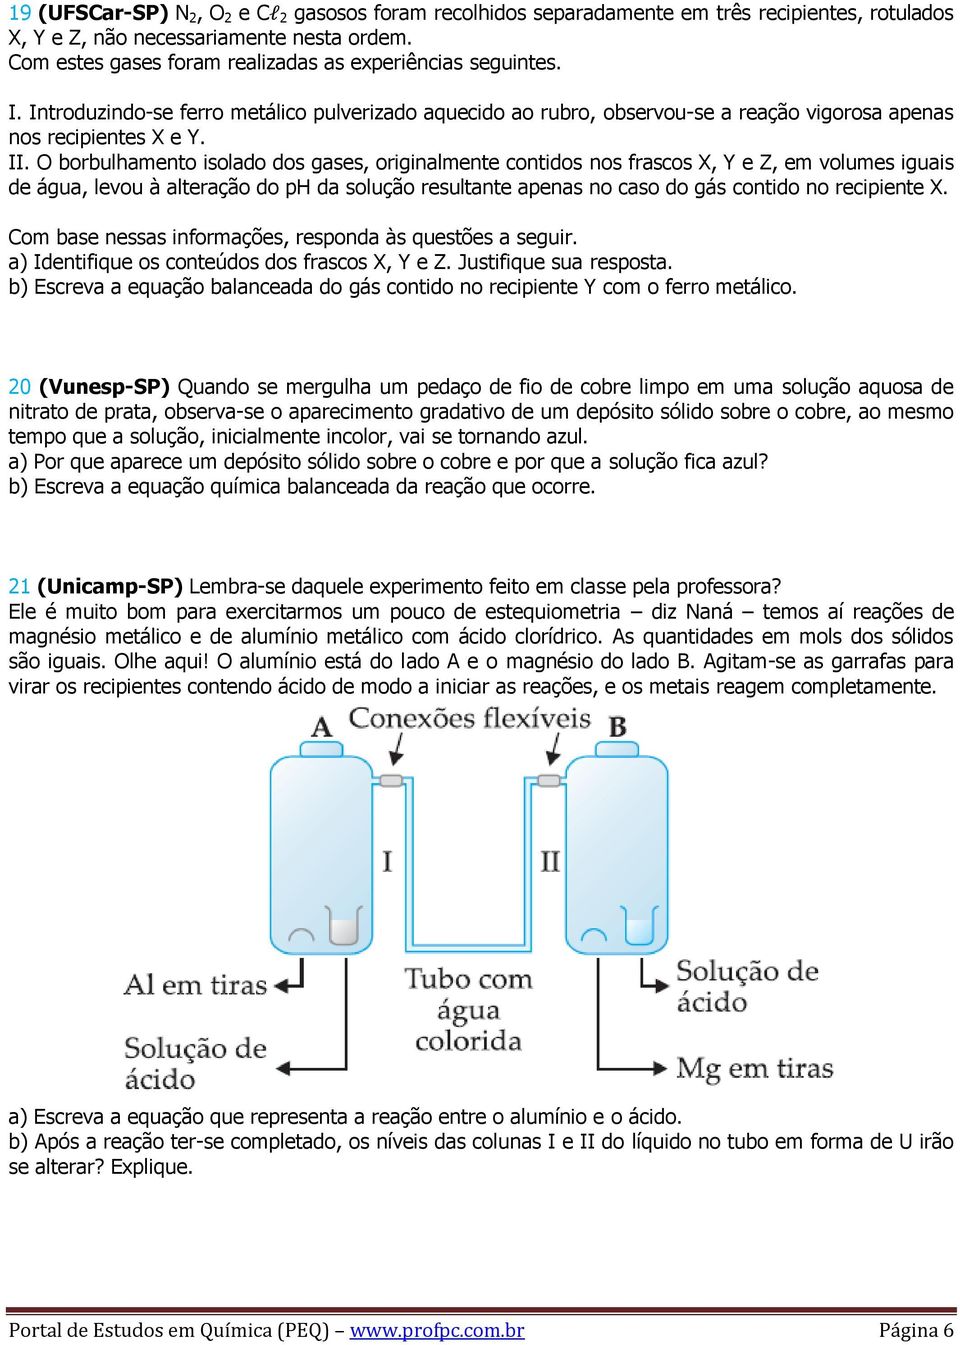 O borbulhamento isolado dos gases, originalmente contidos nos frascos X, Y e Z, em volumes iguais de água, levou à alteração do ph da solução resultante apenas no caso do gás contido no recipiente X.